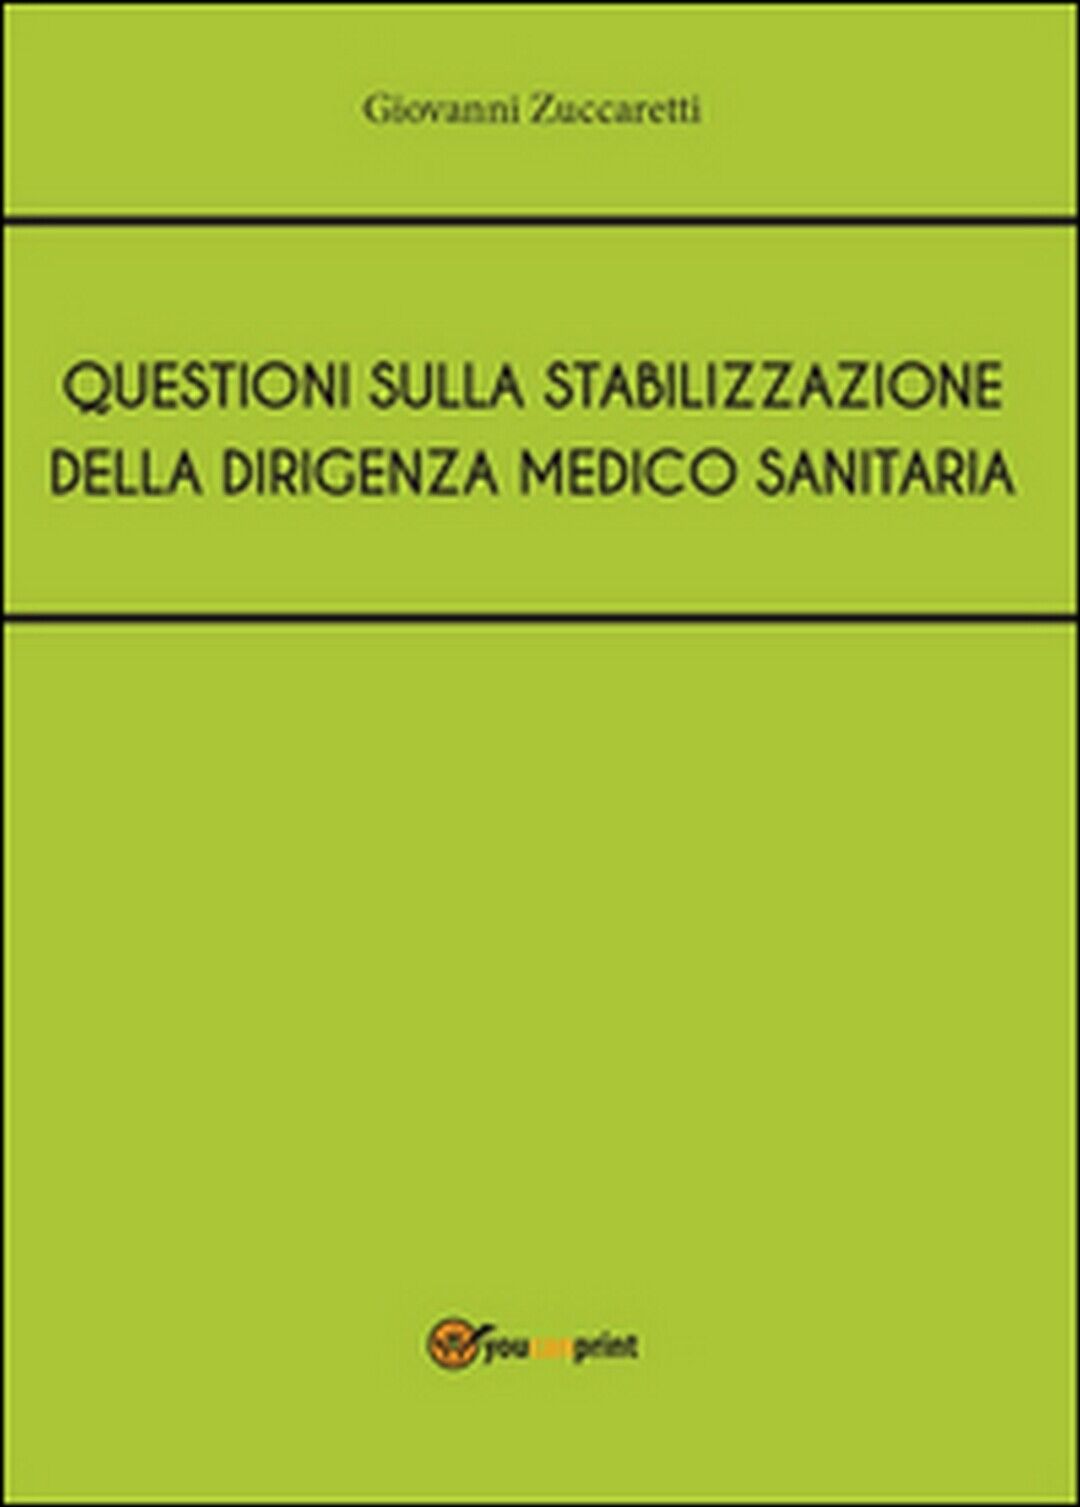 Questioni sulla stabilizzazione della dirigenza medico sanitaria  (Zuccaretti)